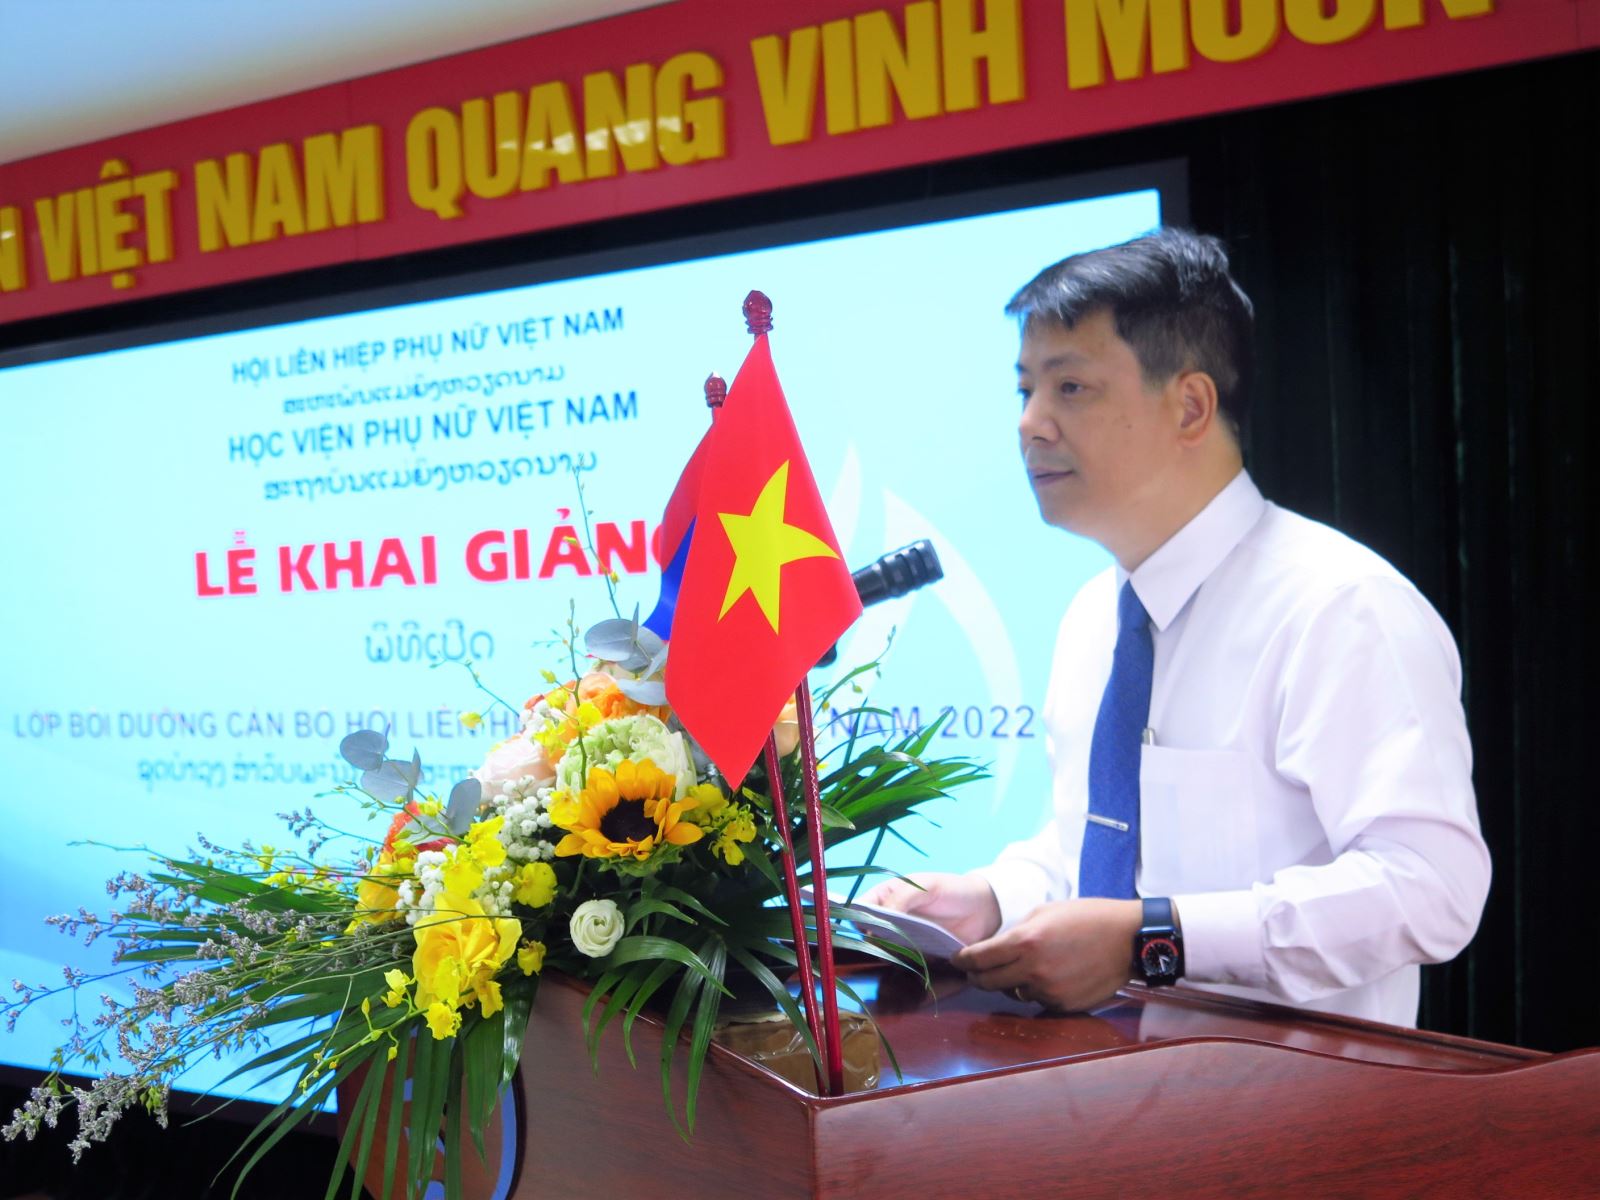 Phát biểu khai giảng Lớp bồi dưỡng cán bộ Hội LHPN Lào năm 2022